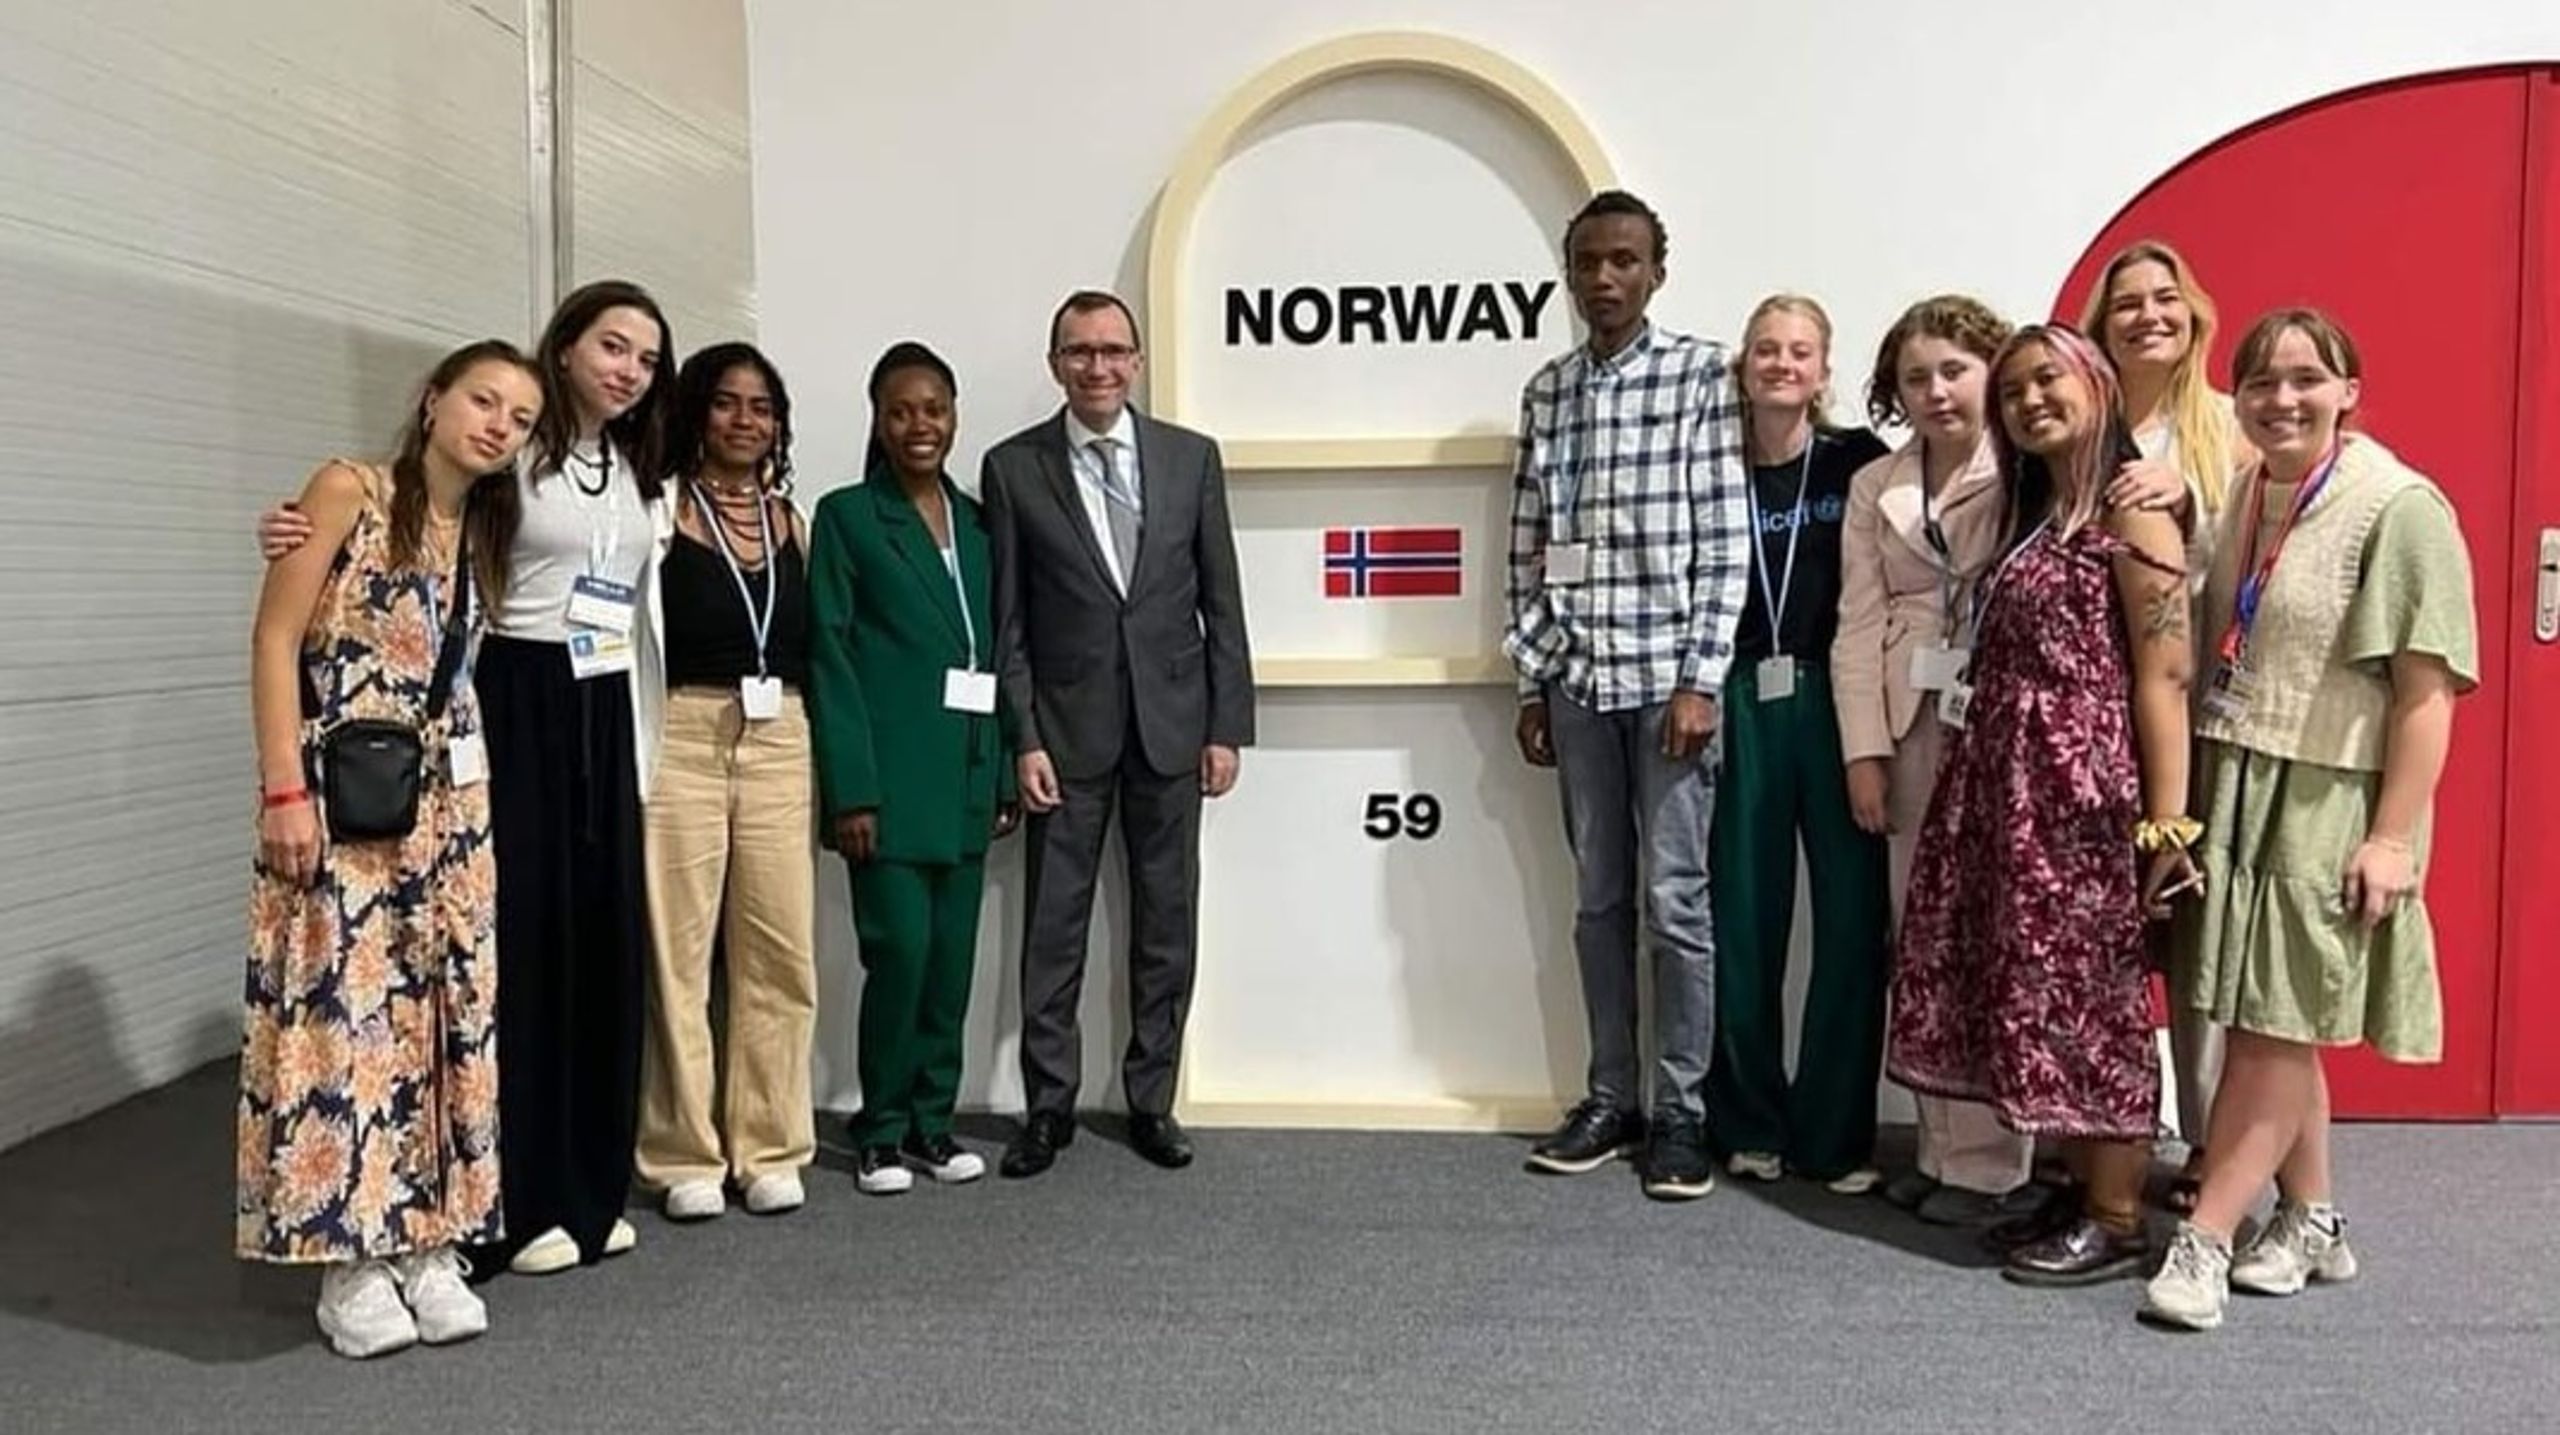 Den norske klimaminister, Espen Barth Eide, mødtes med en gruppe aktivister - heriblandt danske Selma de Montgomery til COP'en.&nbsp;